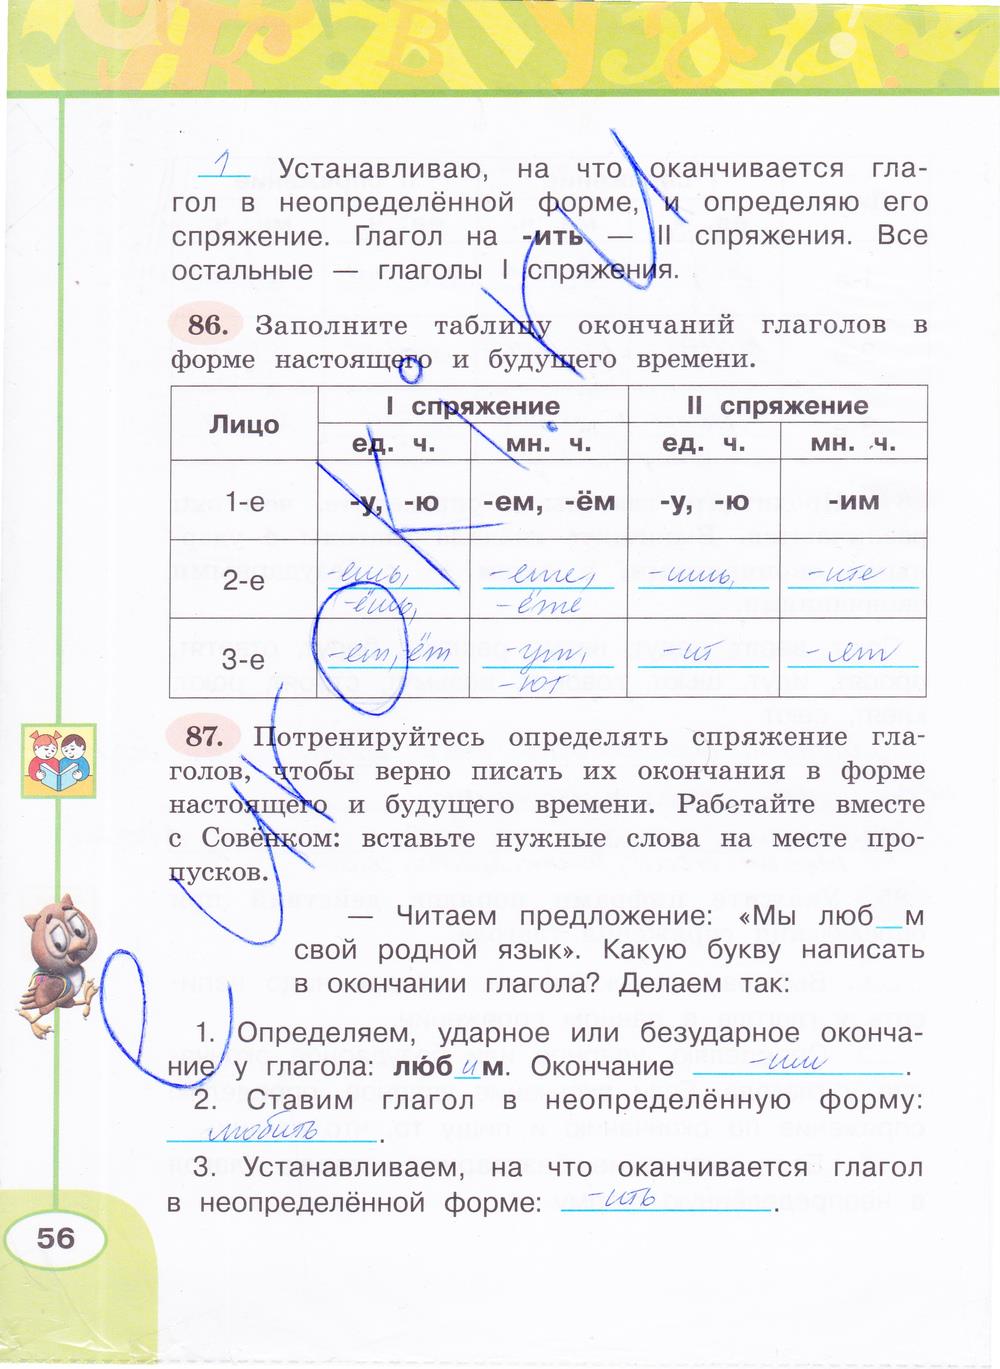 гдз 4 класс рабочая тетрадь часть 2 страница 56 русский язык Климанова, Бабушкина